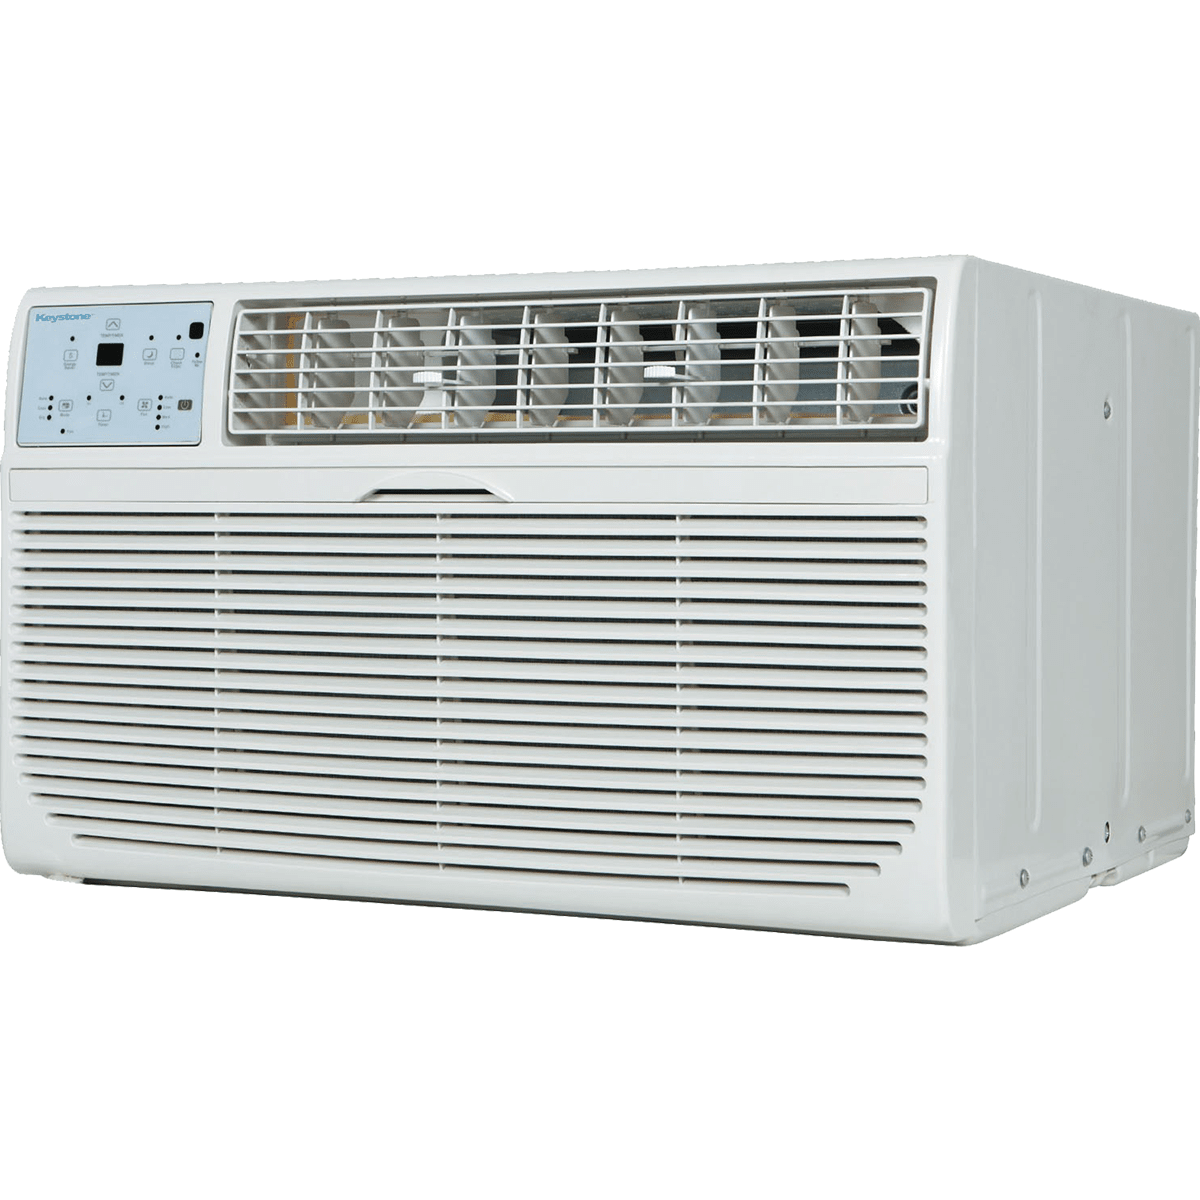 Keystone 8,000 BTU Thru-the-Wall Air Conditioner